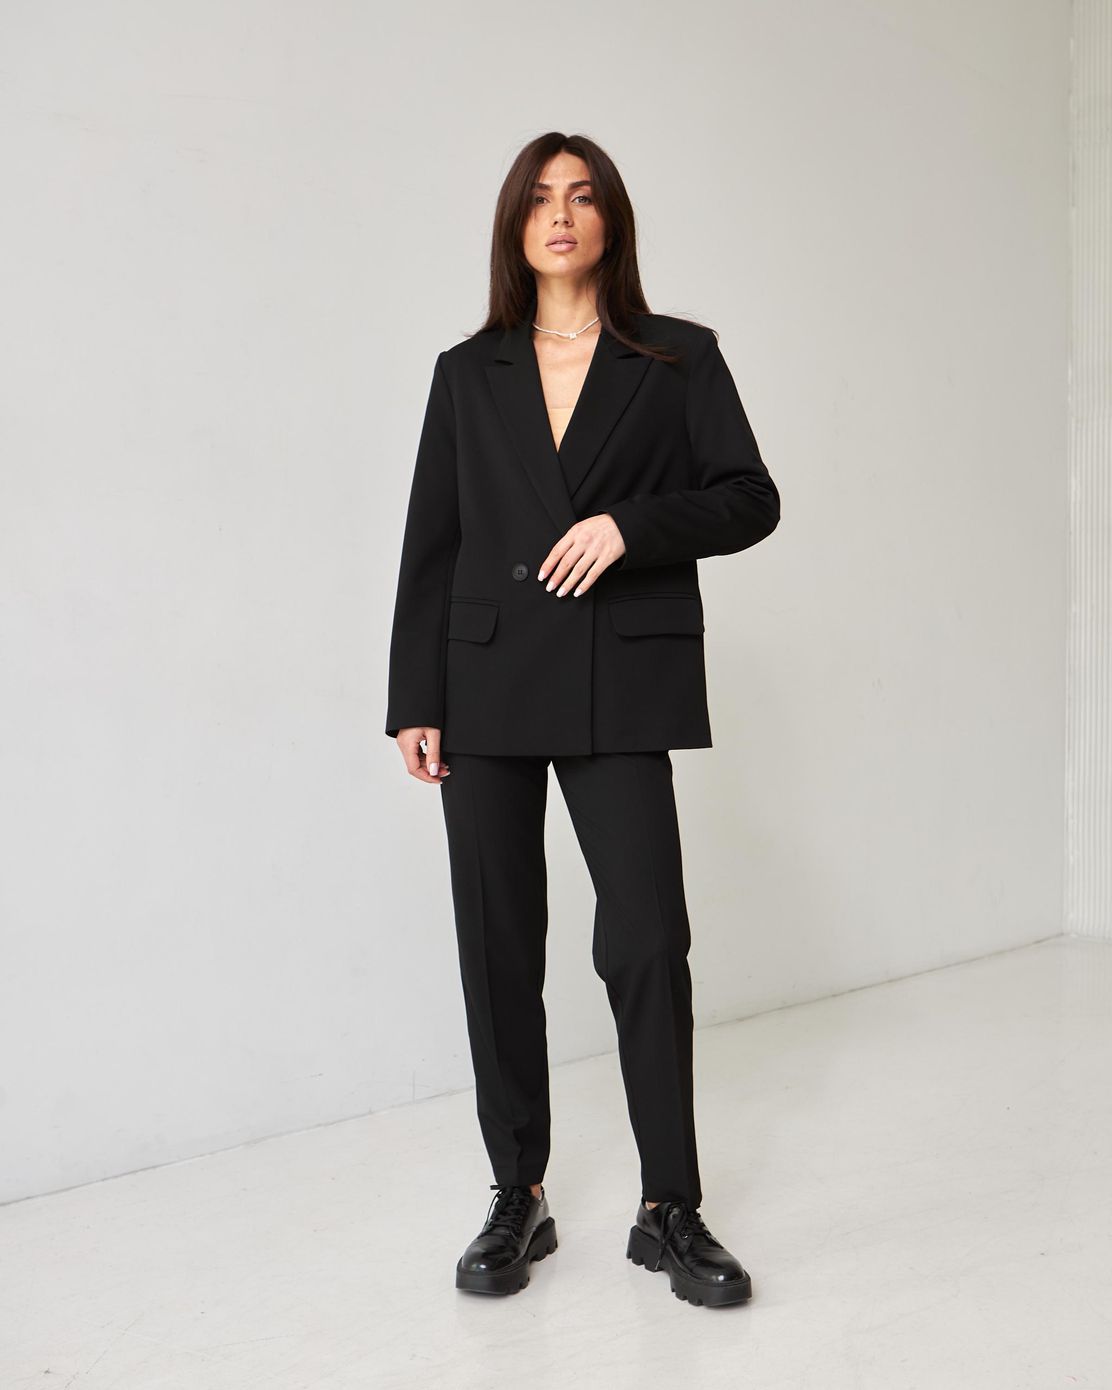 Пиджак классический двубортный черный, Черный, XS